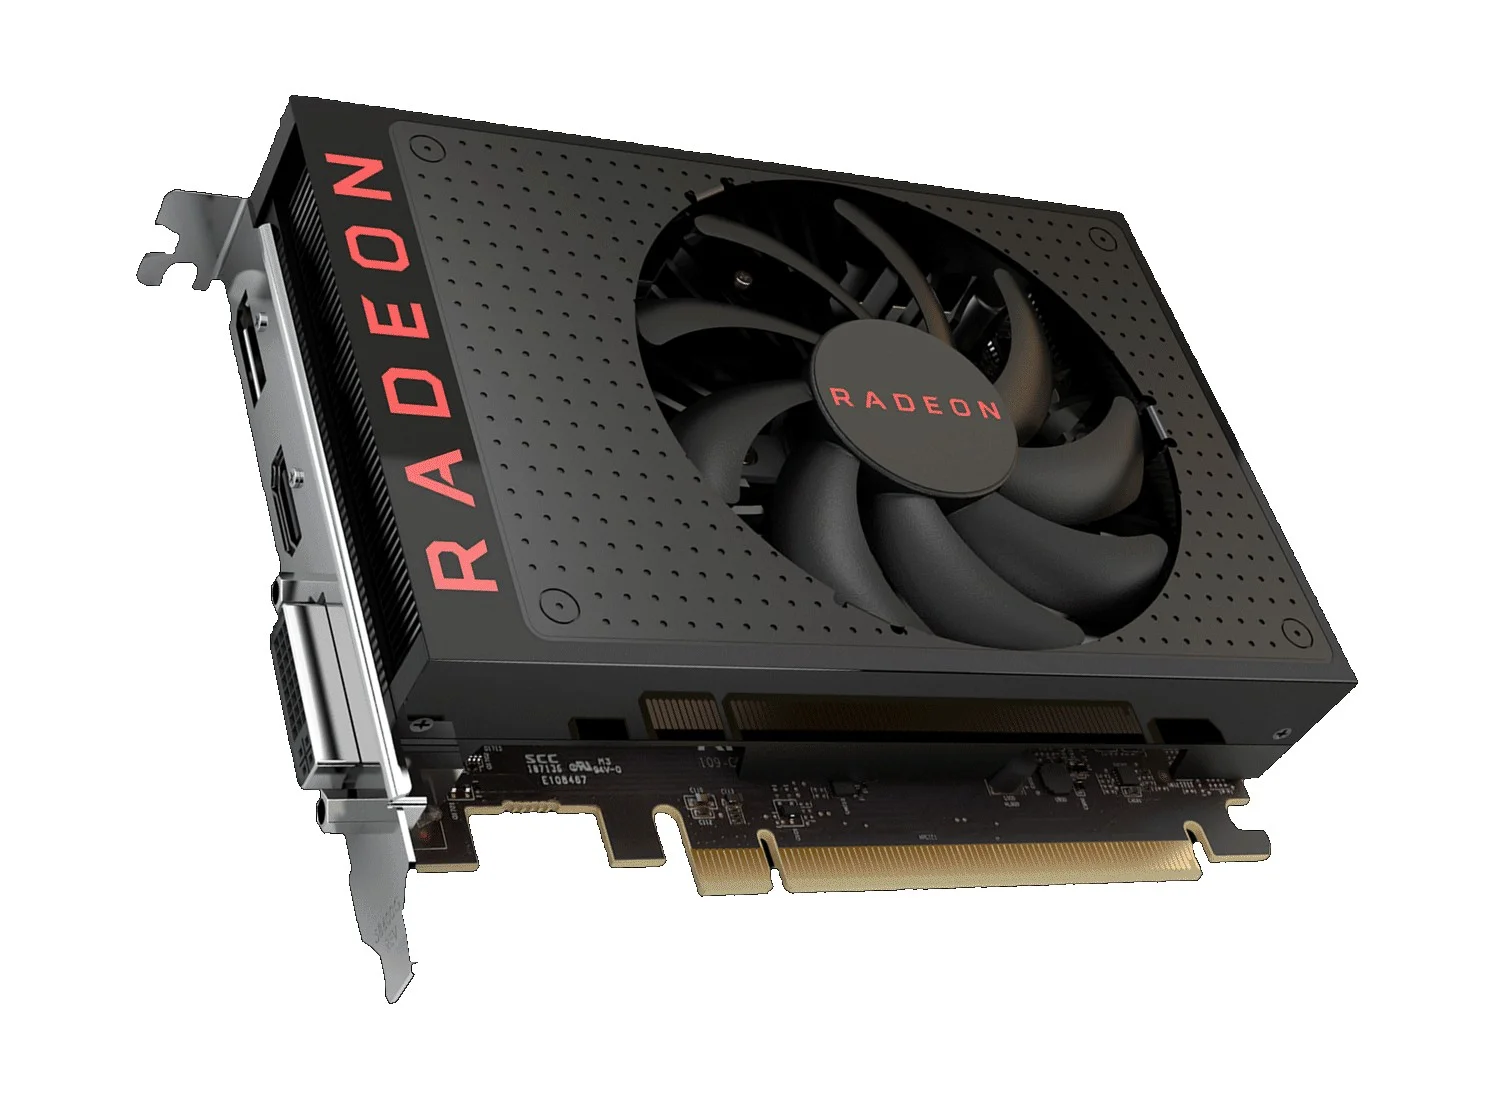 Rx 550 series драйвера. XFX RX 560 4gb. Видеокарта АМД 560 RX. Видеокарта AMD RX 550. Видеокарта Radeon RX 550 4gb.